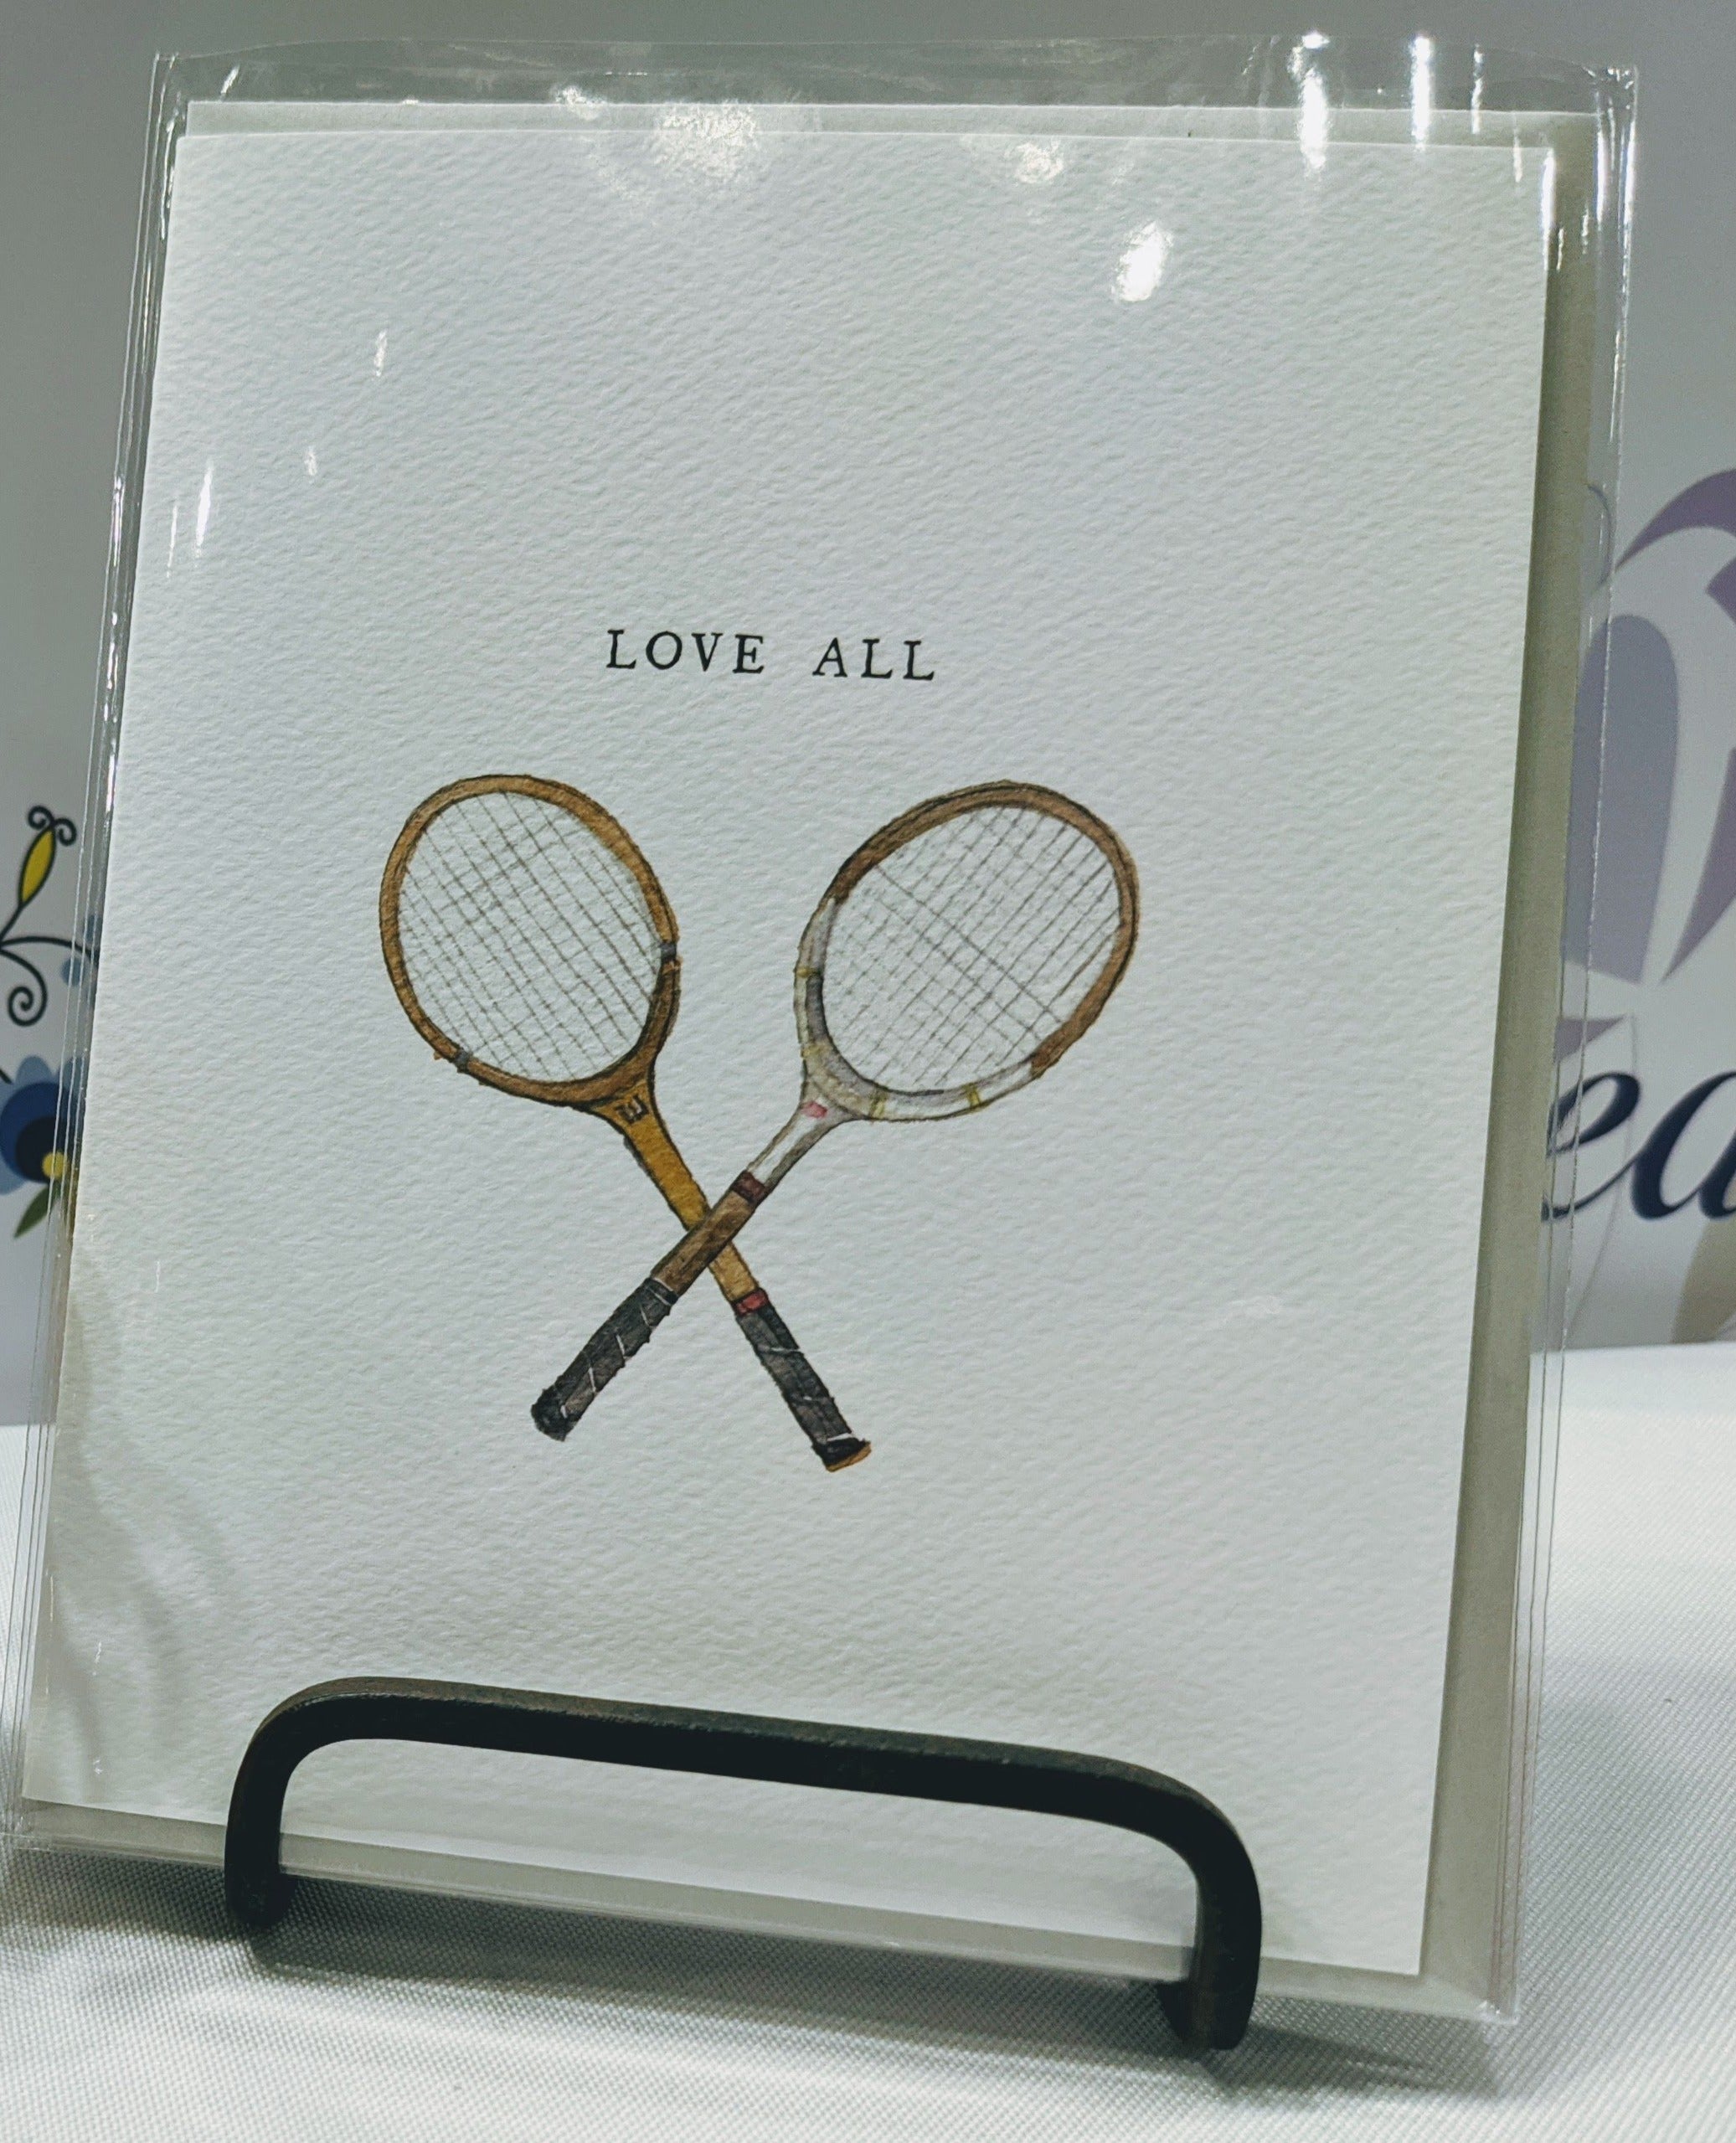 Loveall tennis card